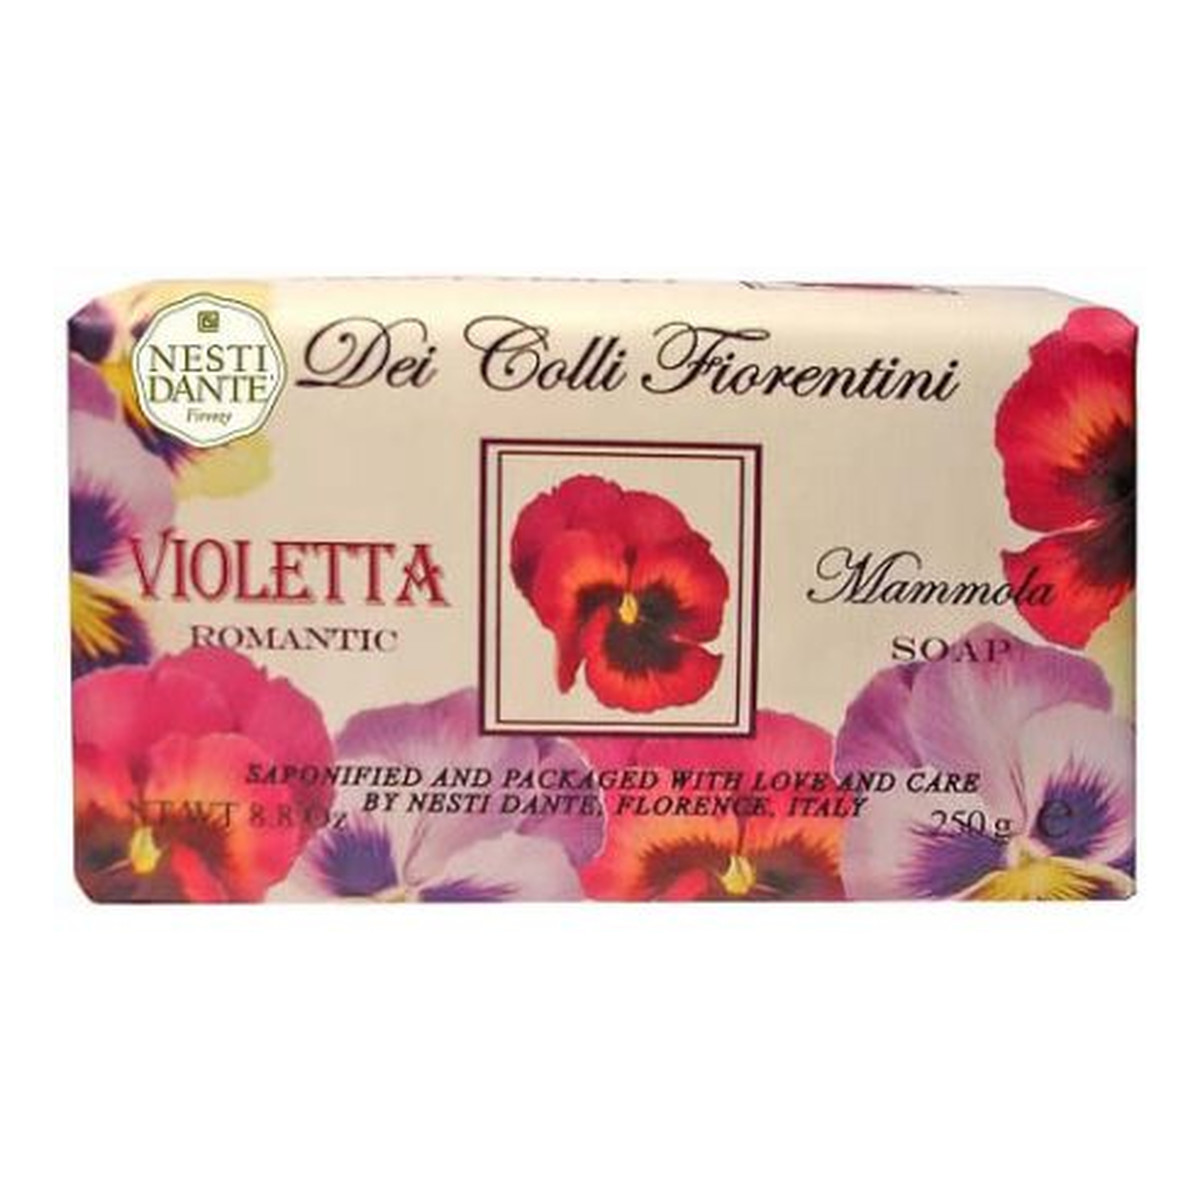 Nesti Dante Dei Colli Fiorentini Violetta Romantic Mydło toaletowe 250g